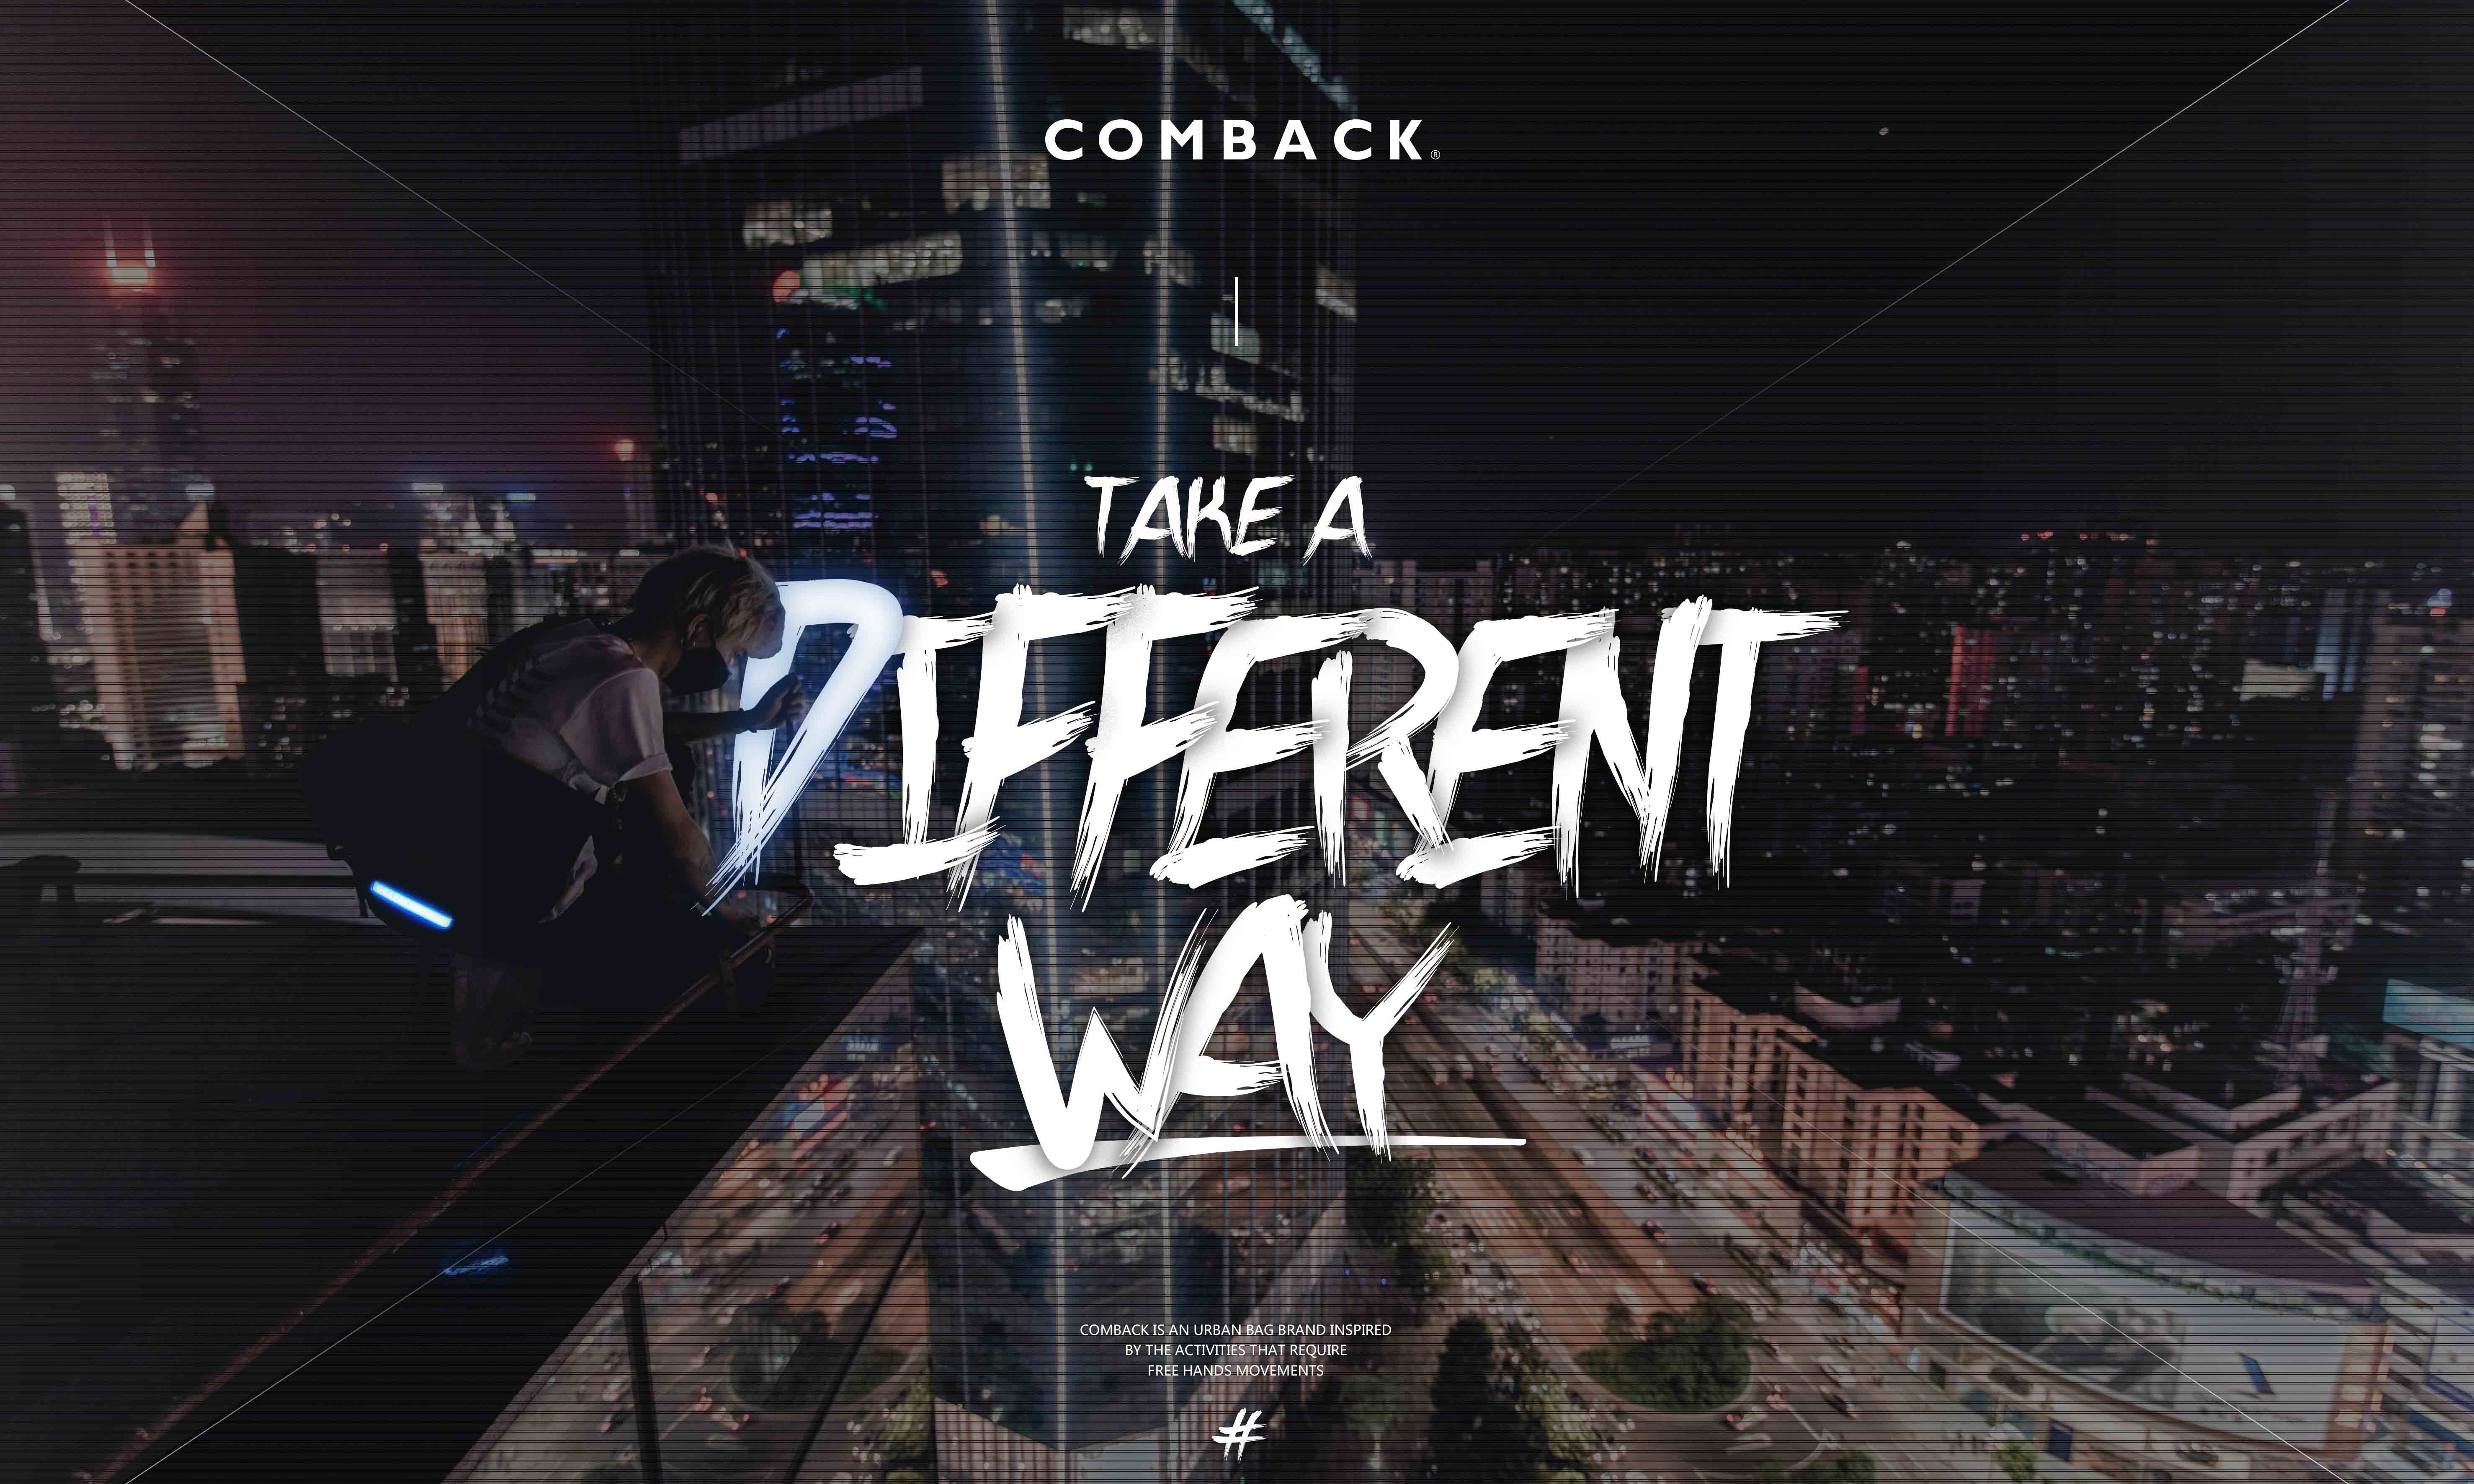 COMBACK “TAKE A DIFFERENT WAY” 闪灯发光条新系列登场